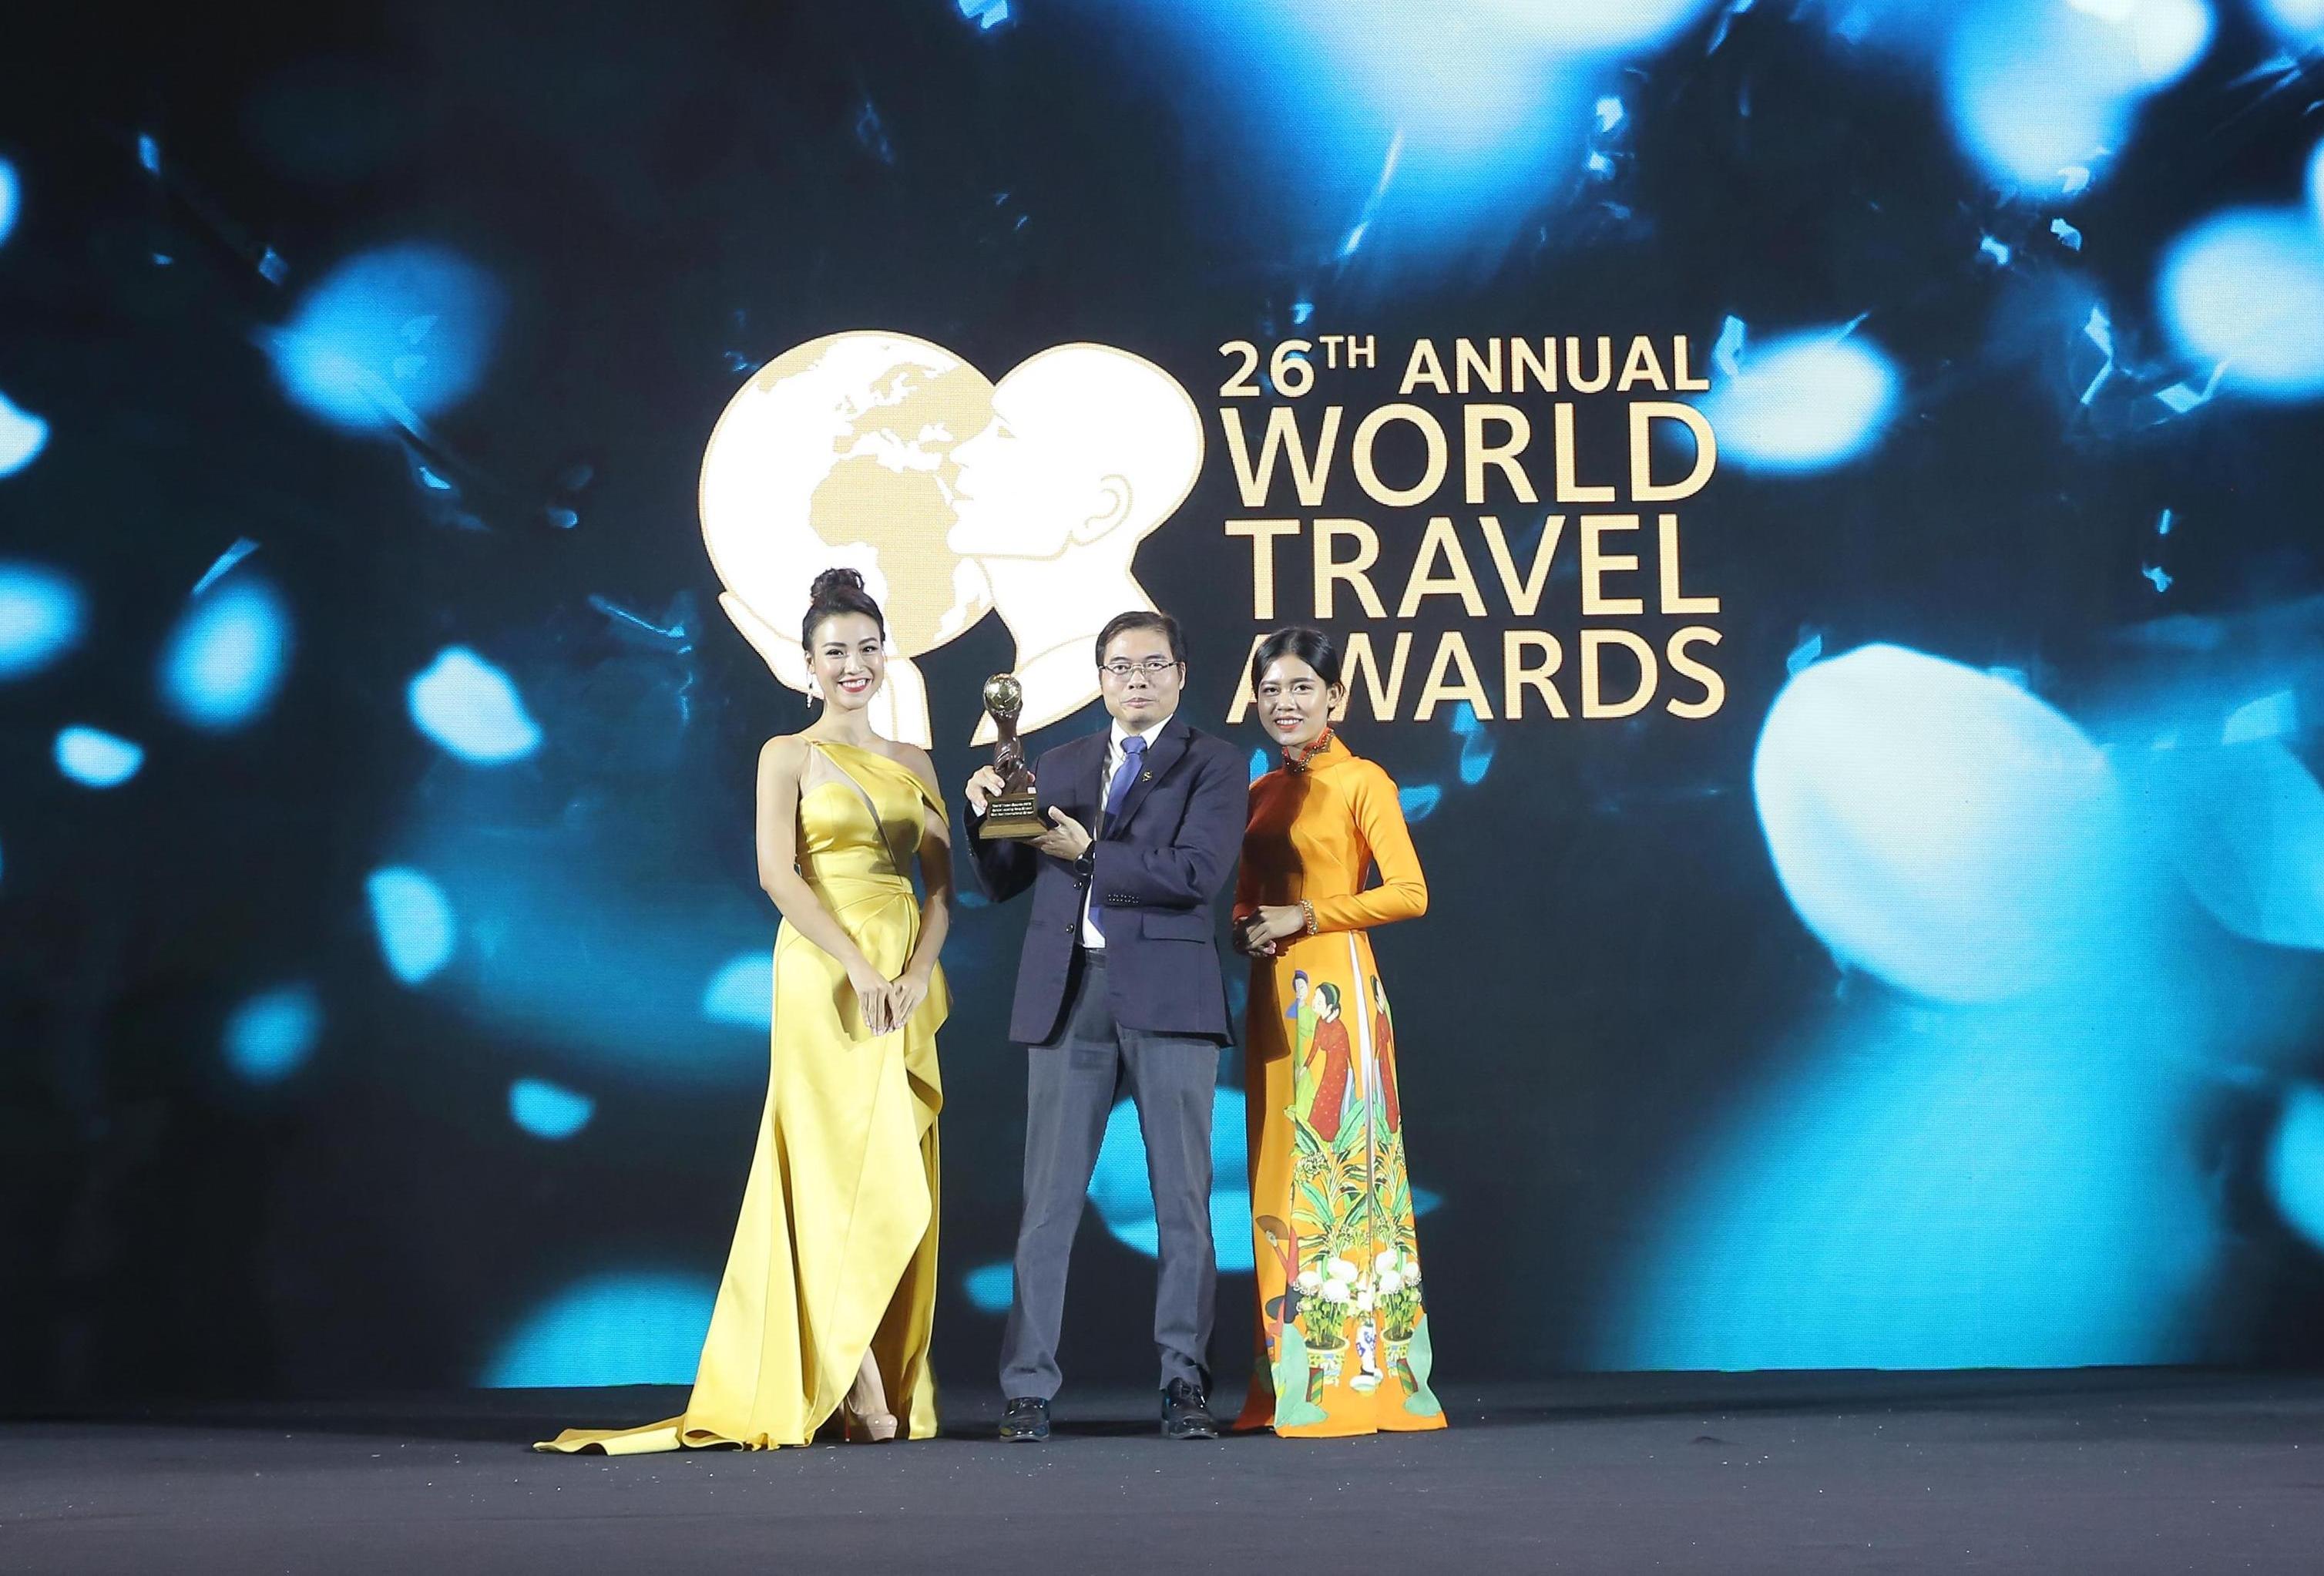 World Travel Awards khu vực châu Á- châu Đại Dương vinh danh Sân bay quốc tế Vân Đồn